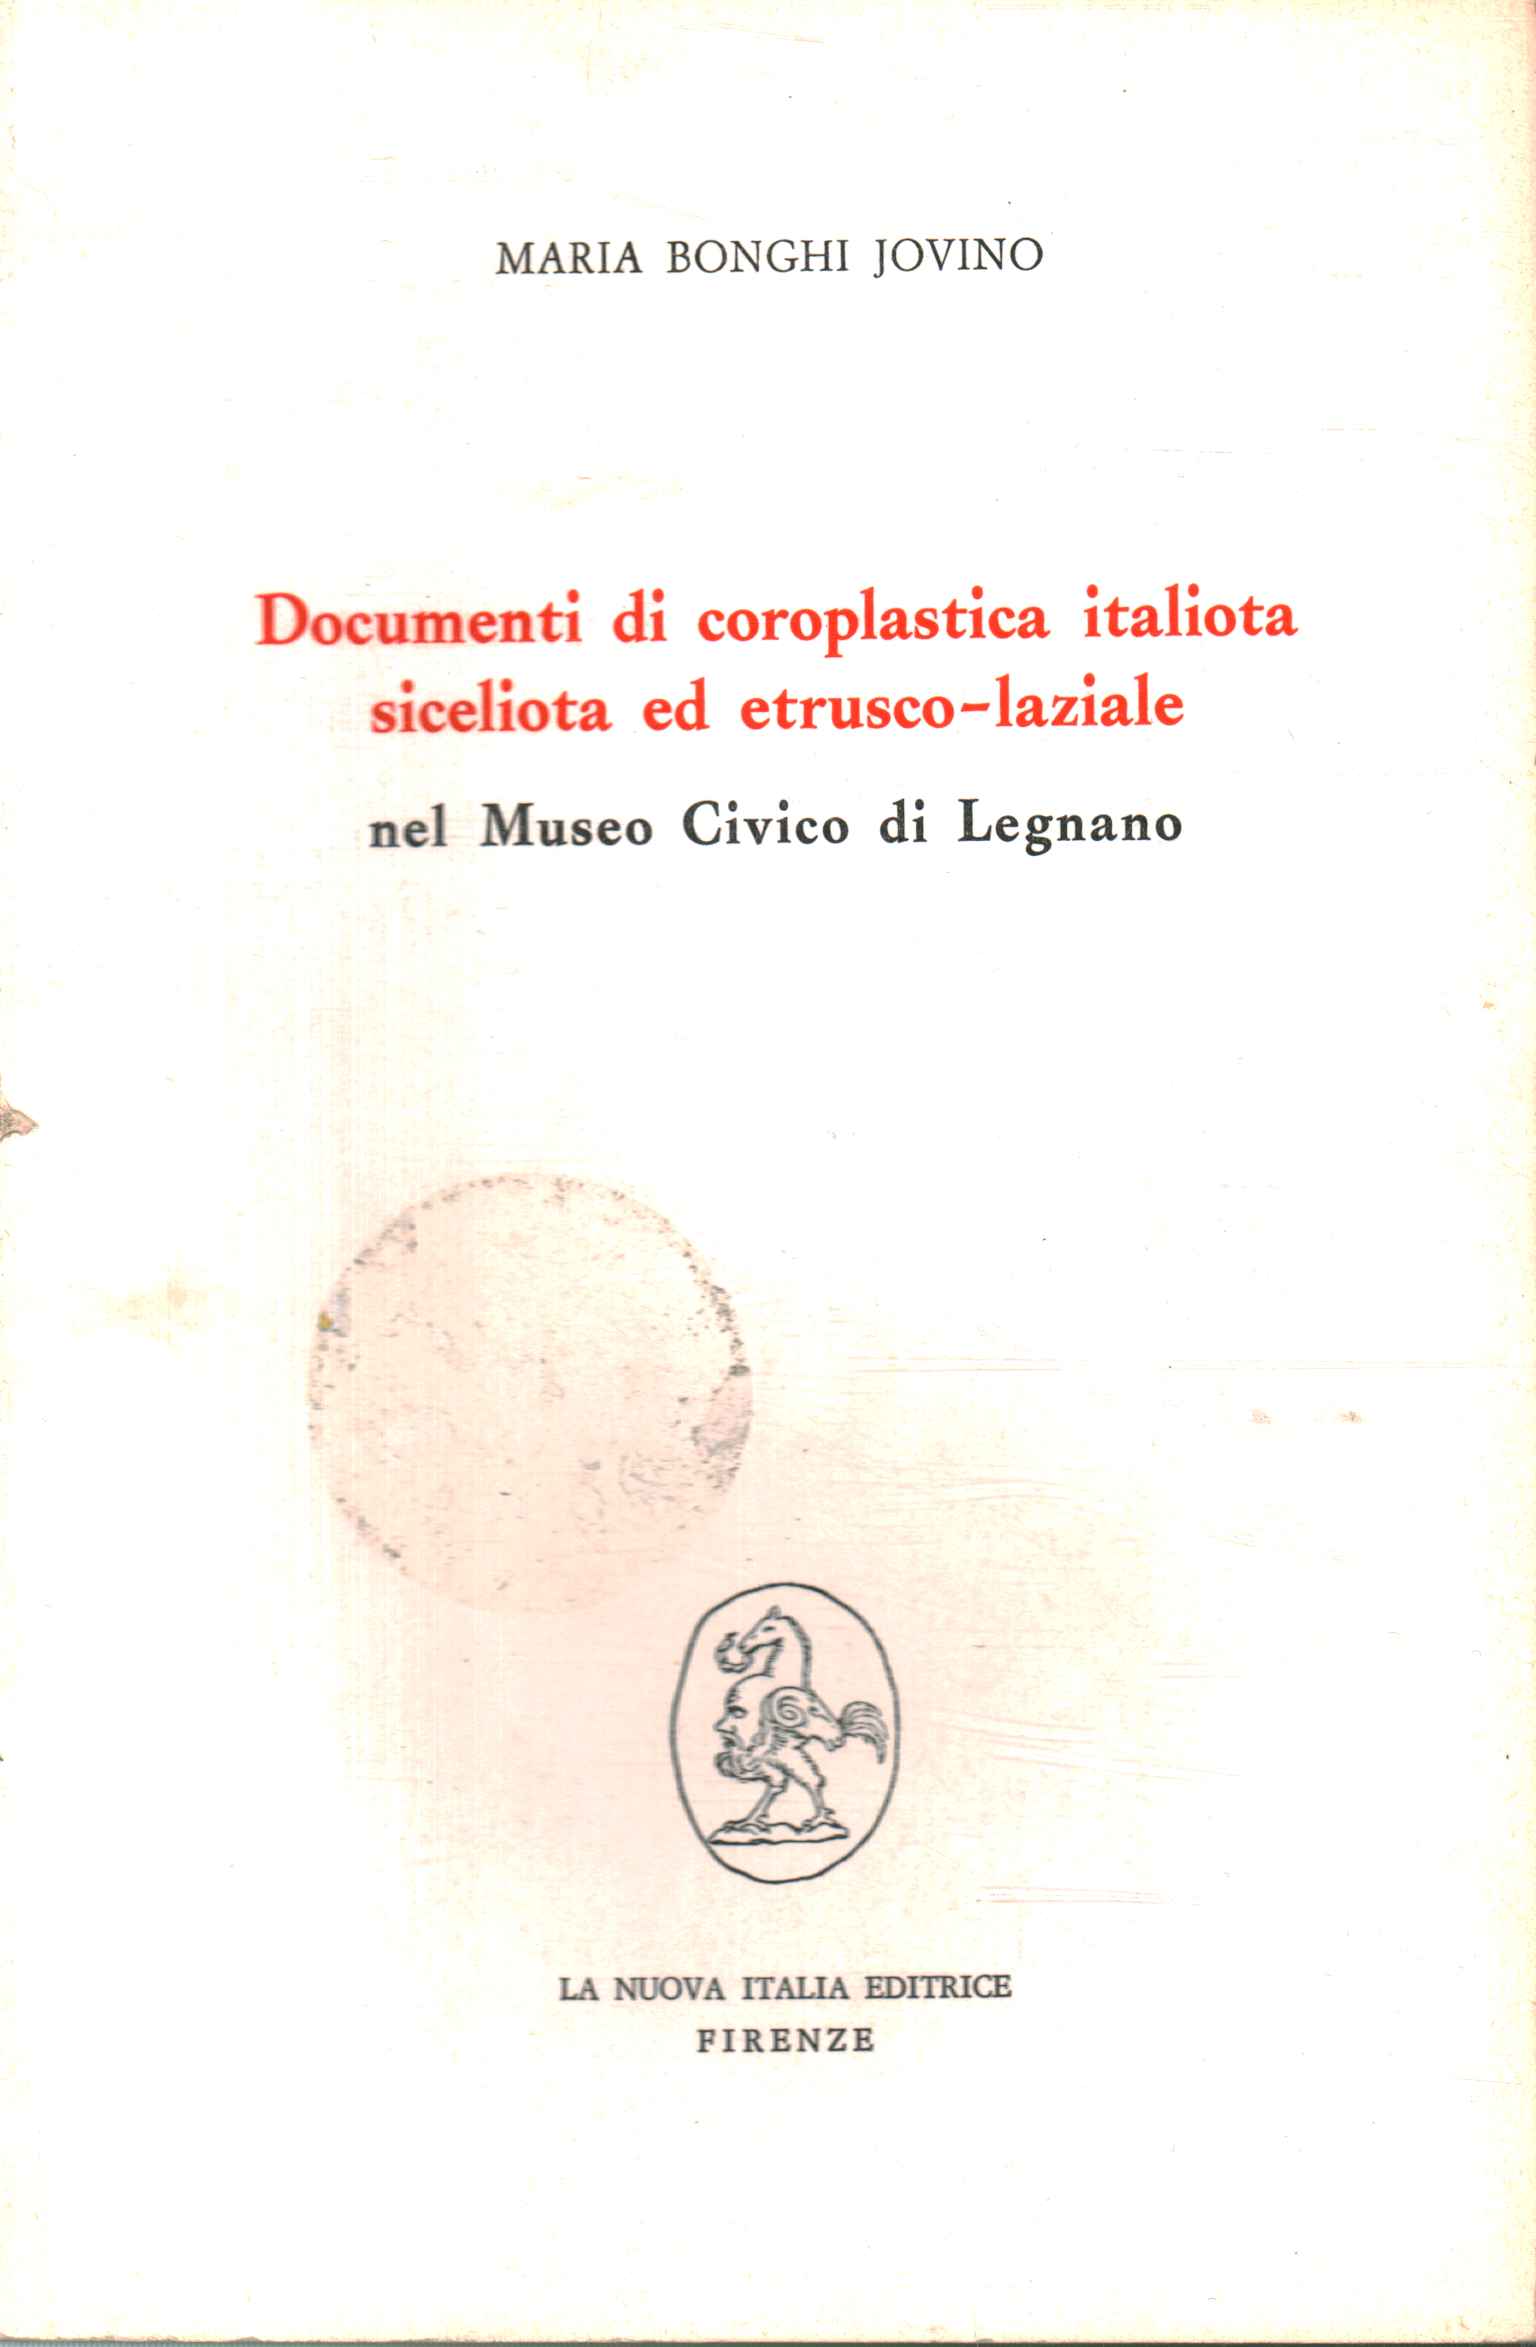 Documenti di coroplastica italiota sicelio